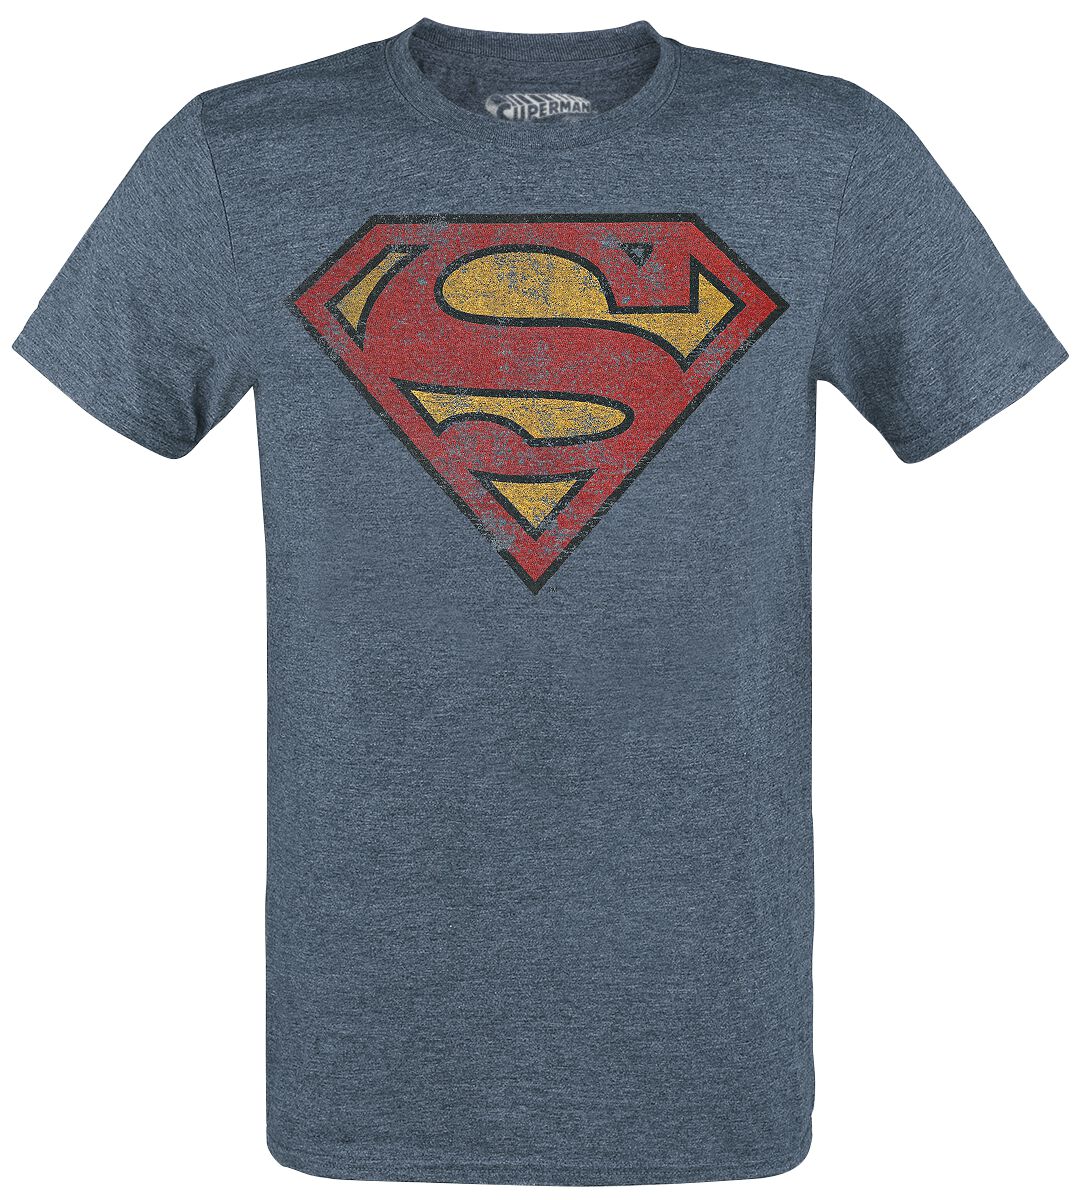 Superman - DC Comics T-Shirt - Logo - M bis XXL - für Männer - Größe L - blau meliert  - Lizenzierter Fanartikel von Superman